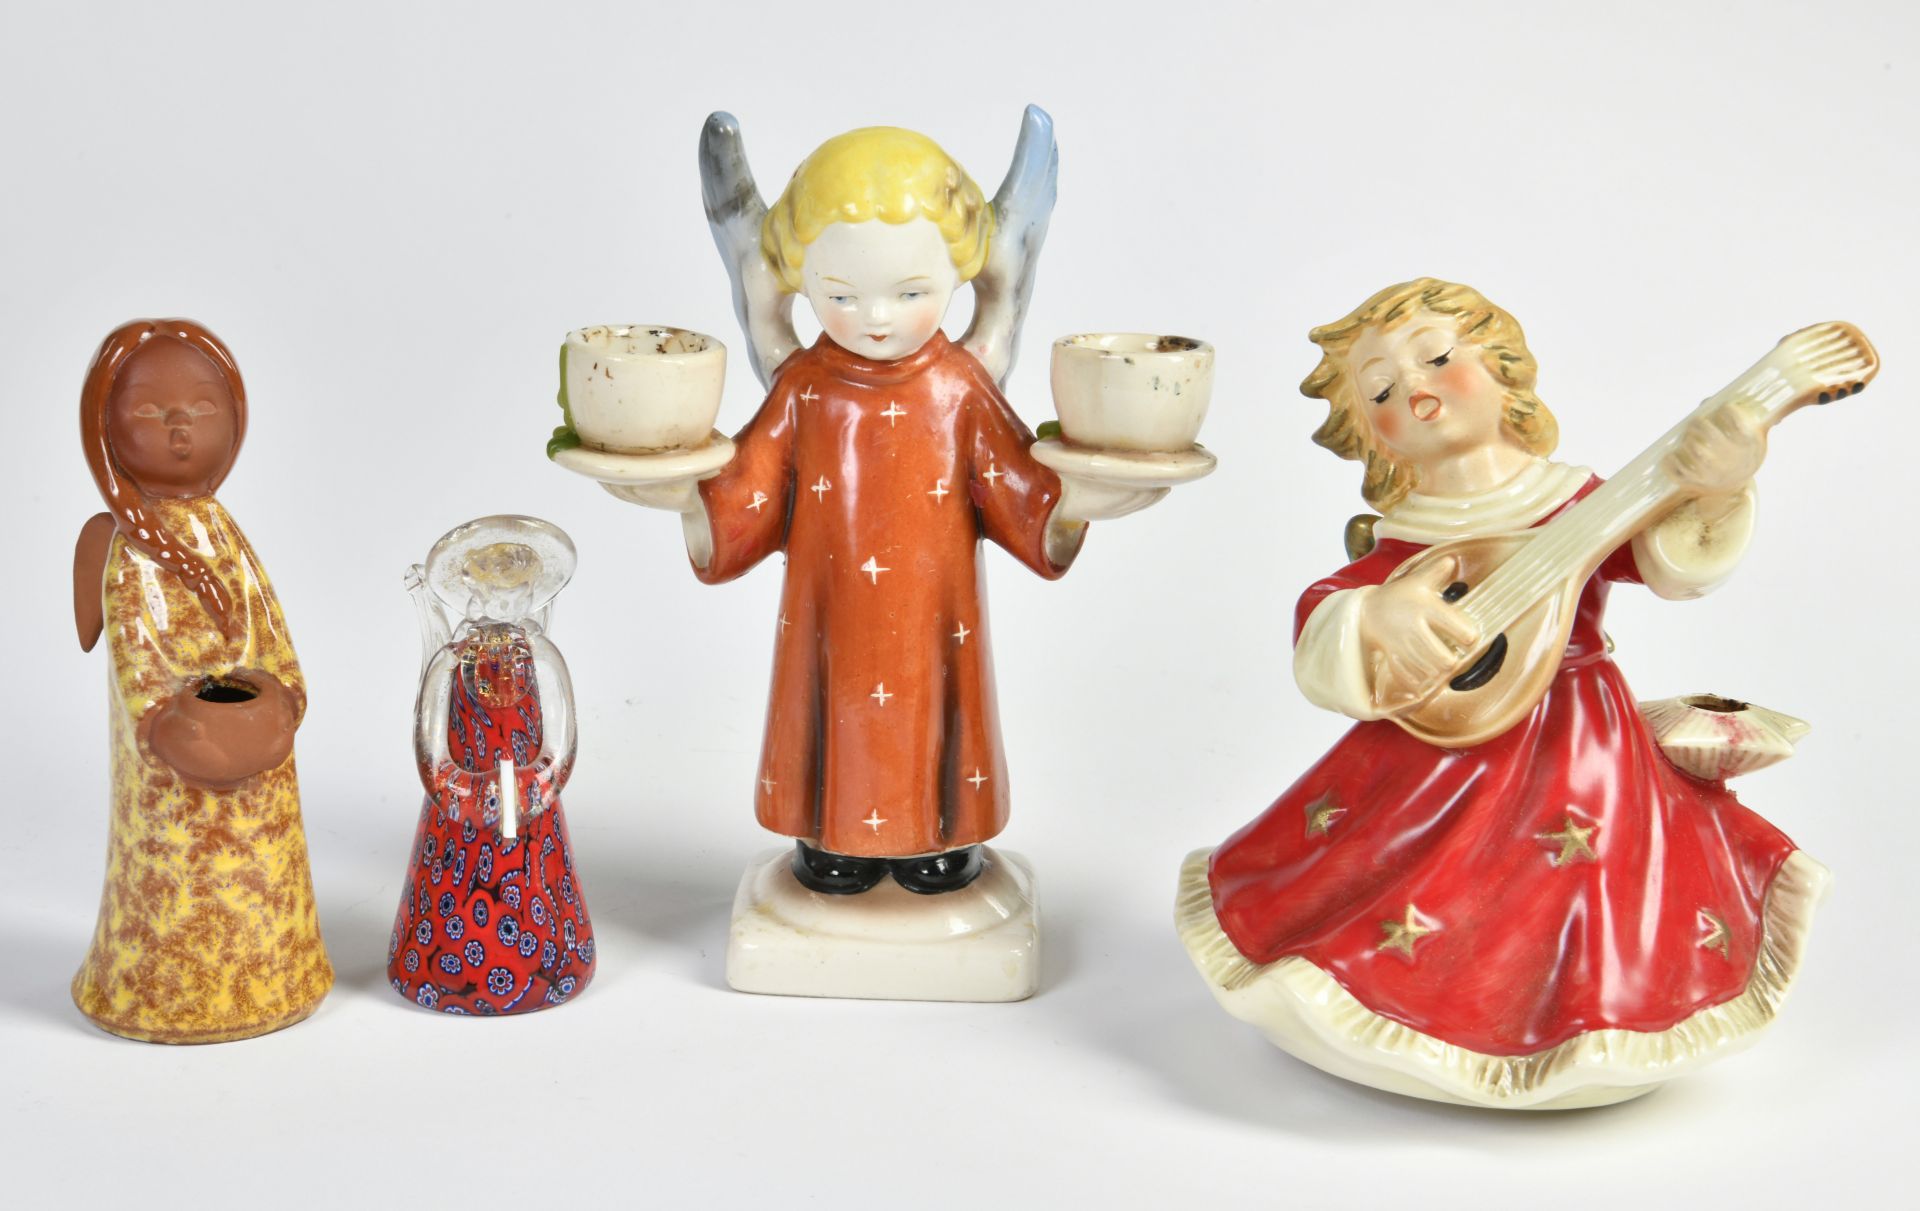 Hummel a.o., 4 angels, glas, porcelain, 10-19 cm, C 1-2